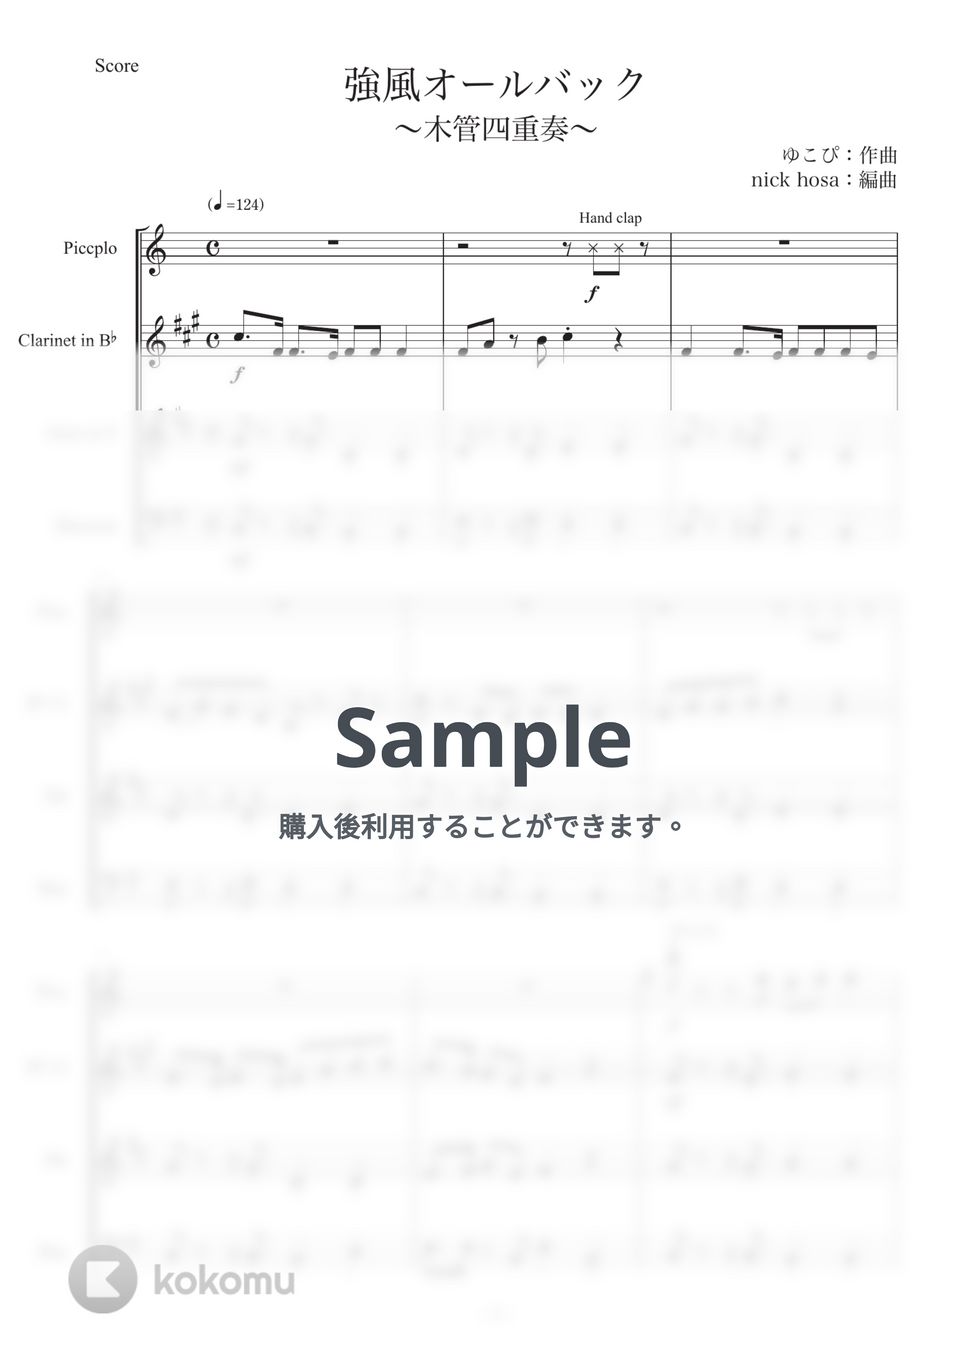 ゆこぴ - 【木管四重奏】強風オールバック (木管アンサンブル) by nick hosa